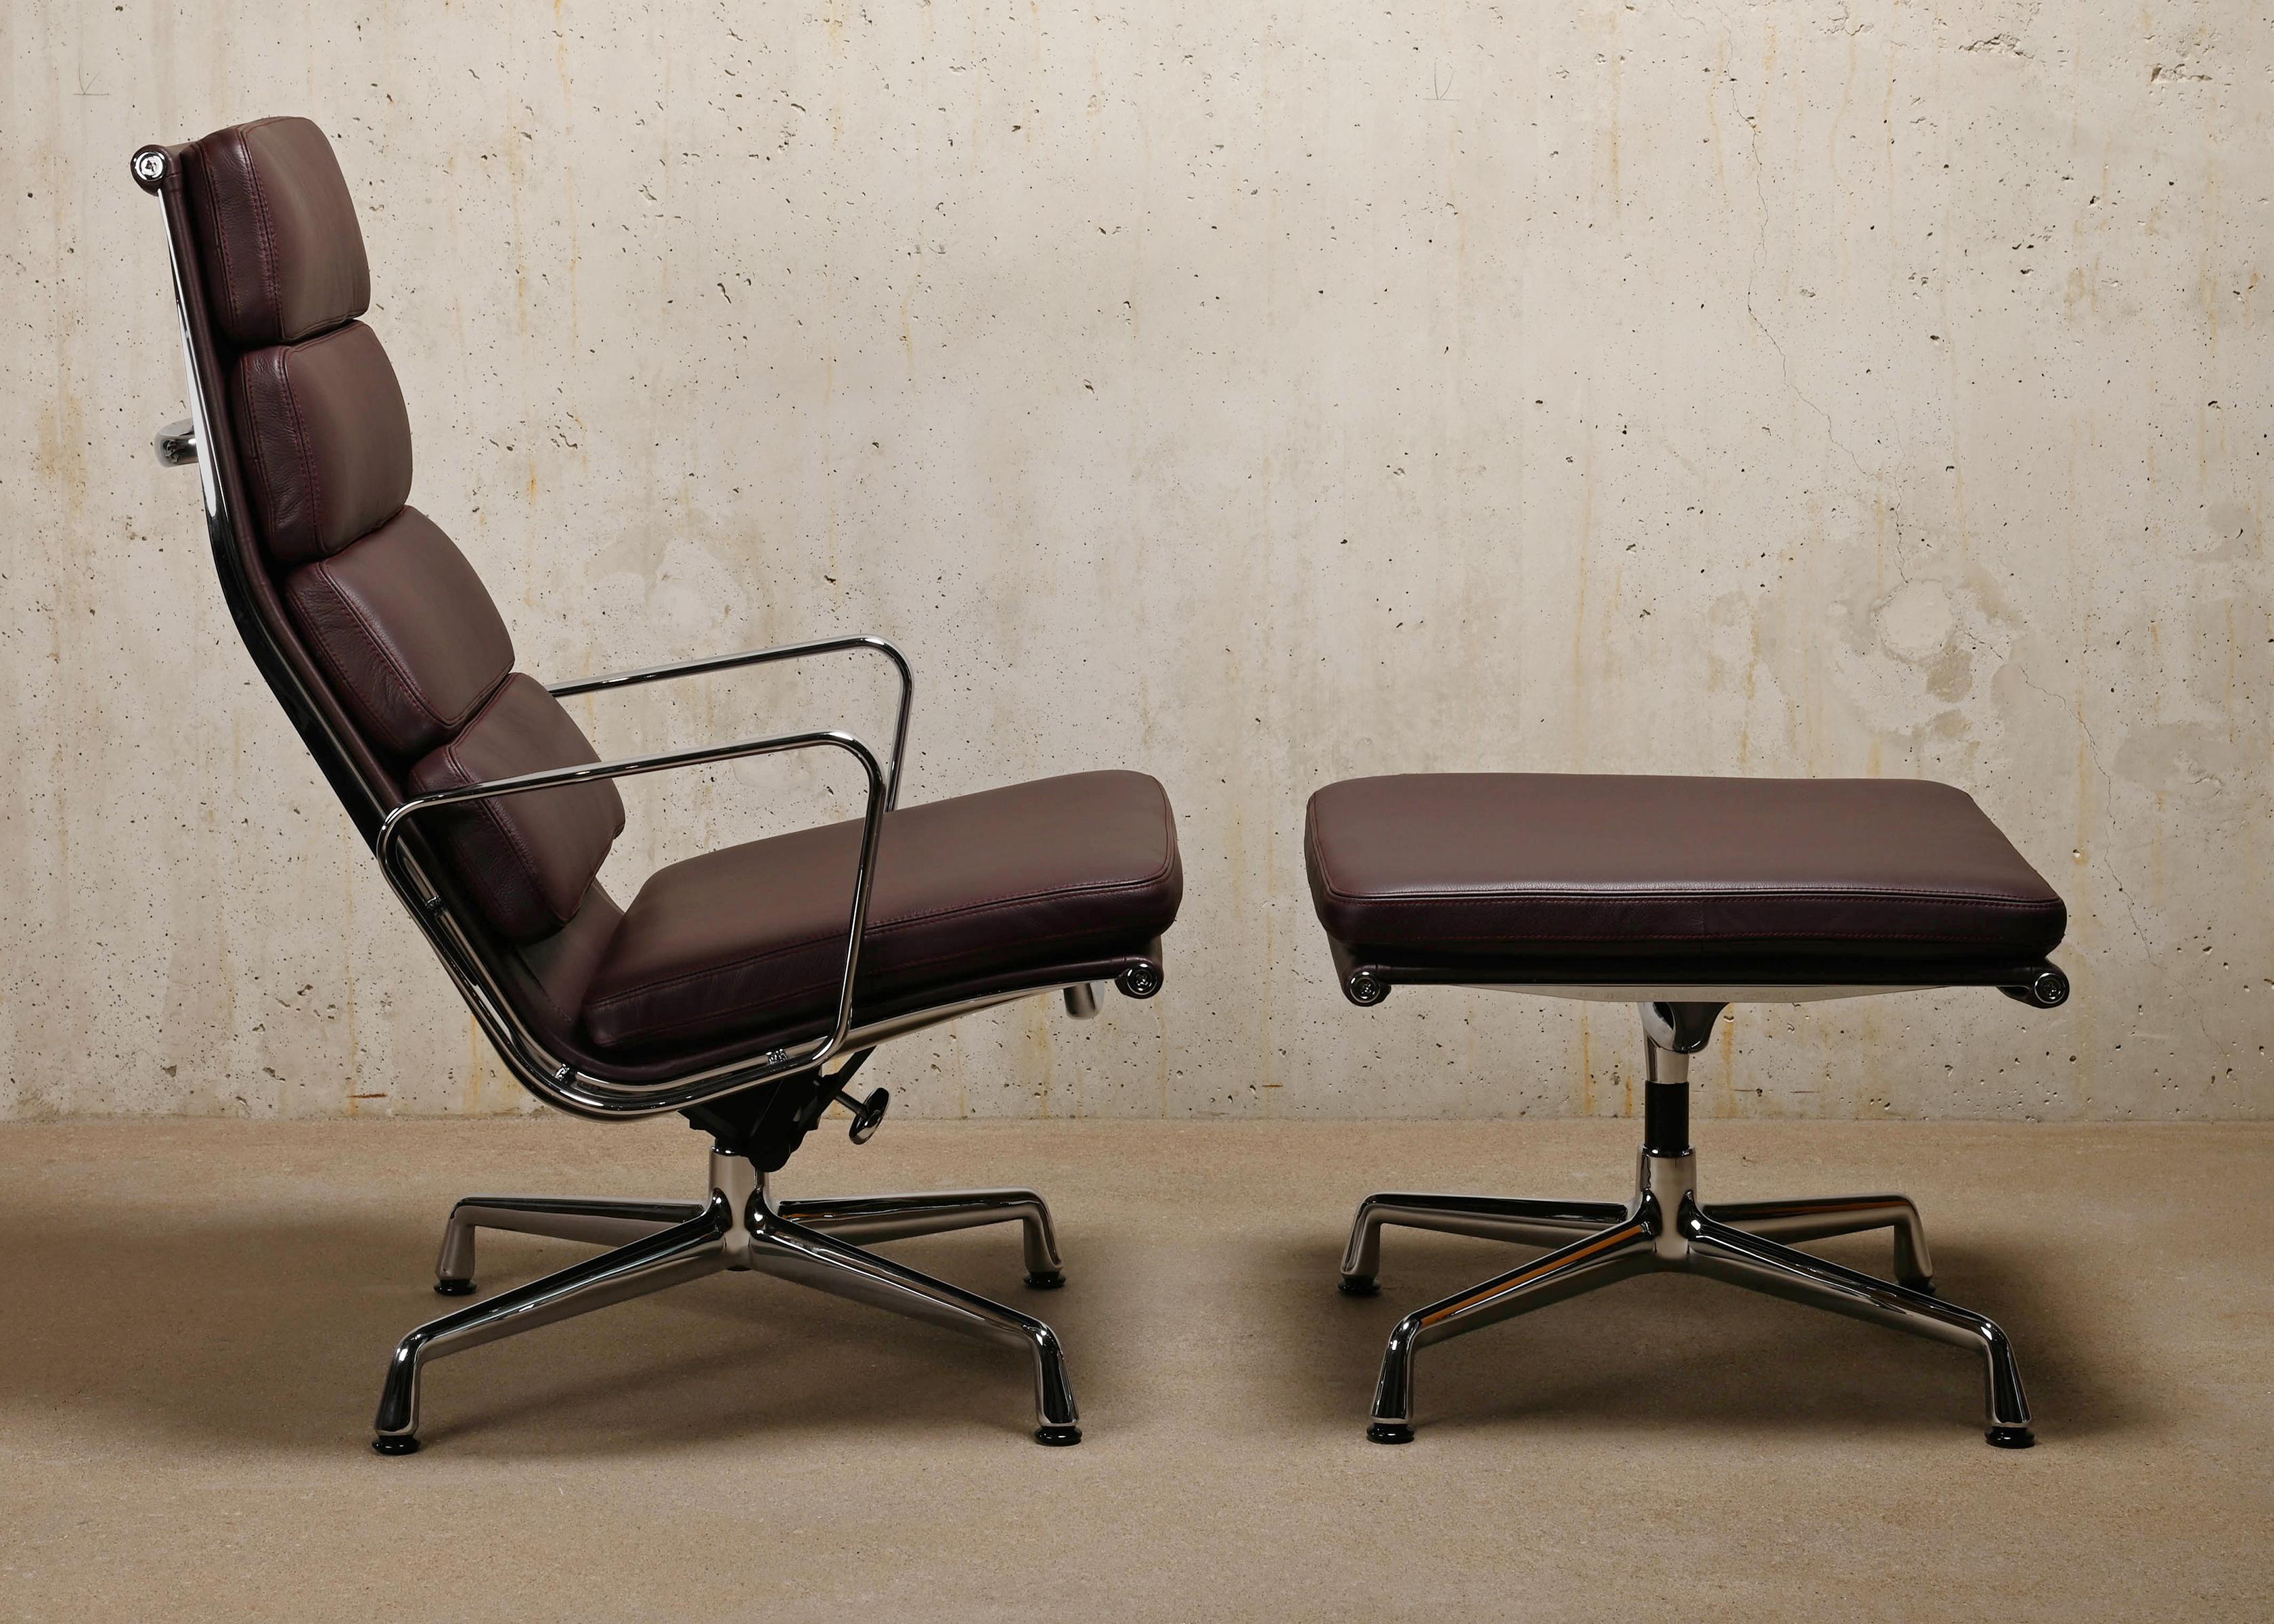 La magnifique chaise longue EA222 et l'ottoman EA223 assorti appartiennent à la célèbre série Aluminium conçue par Charles & Ray Eames pour Herman Miller (US) / Vitra (EU). Un confort exceptionnel est garanti grâce au dossier très haut, aux coussins